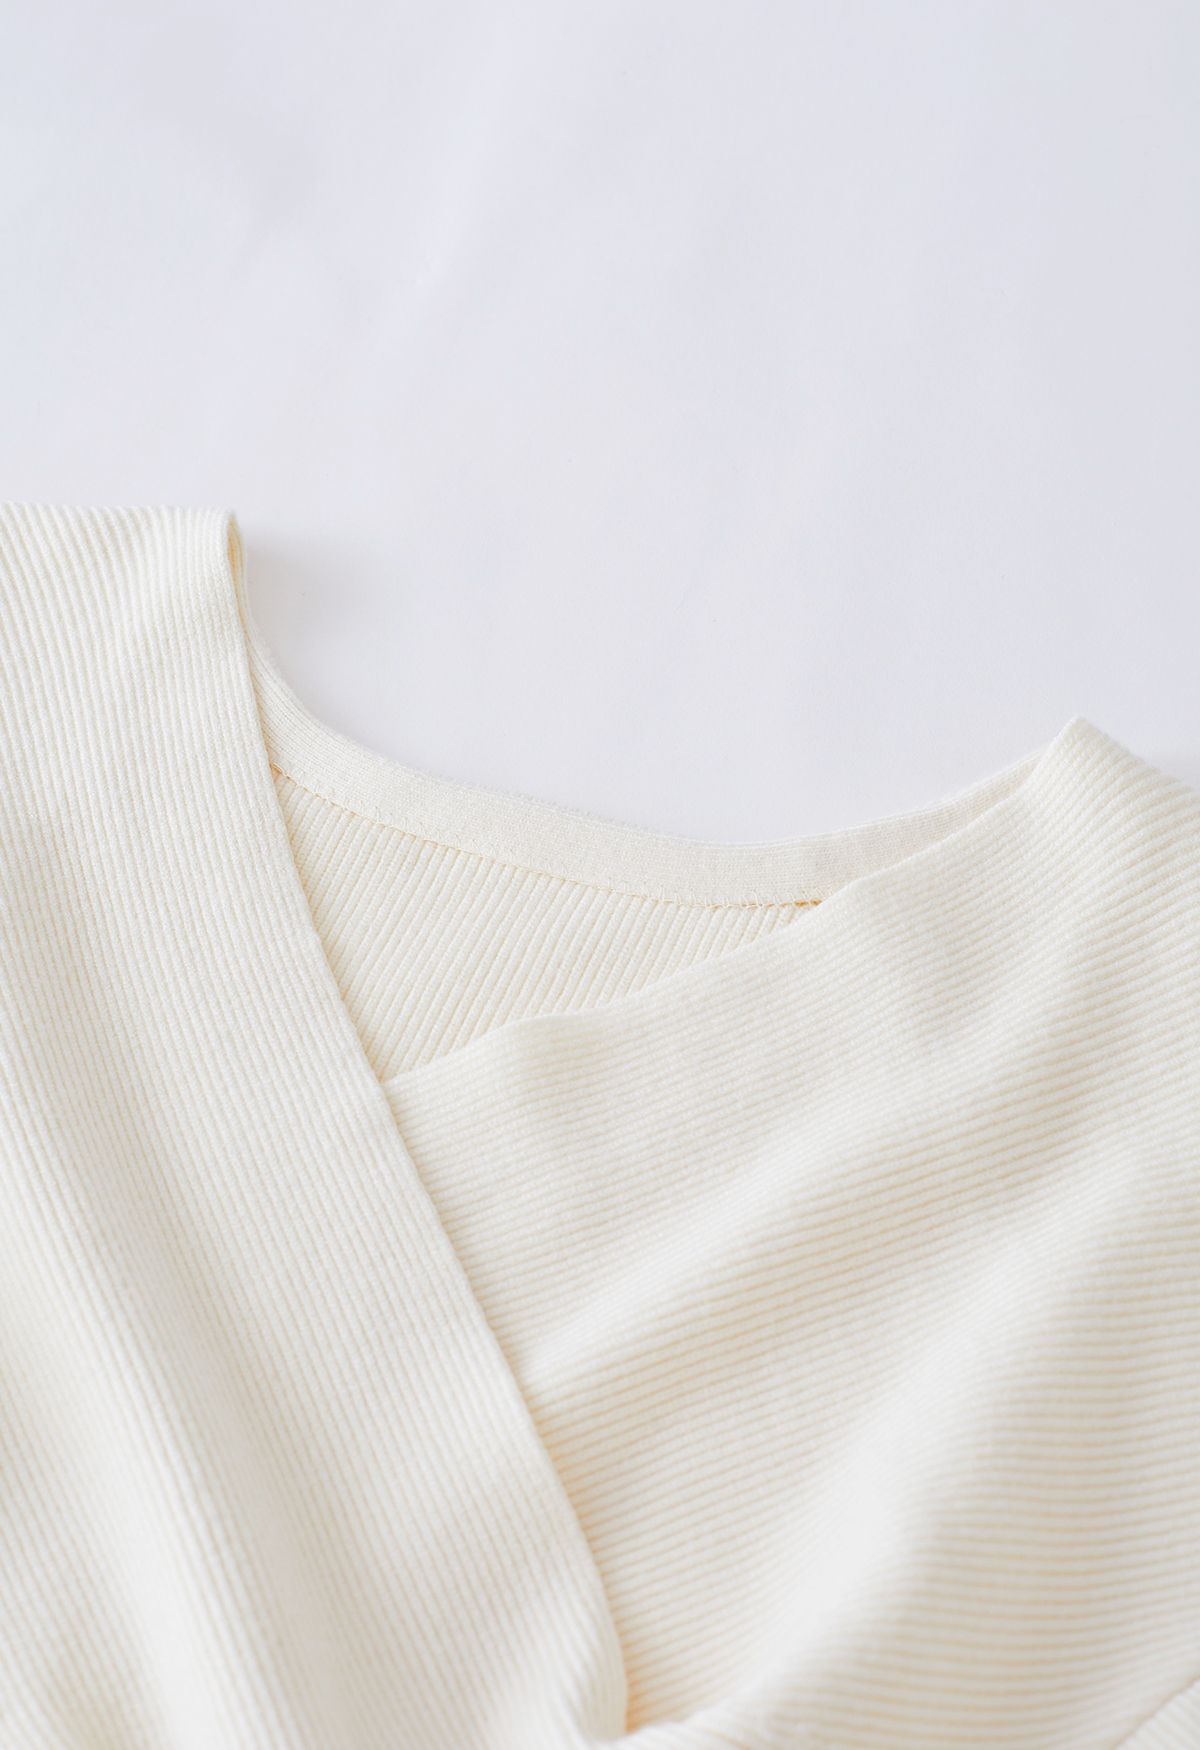 Jersey de canalé entrecruzado y conjunto de punto sin mangas en color crema